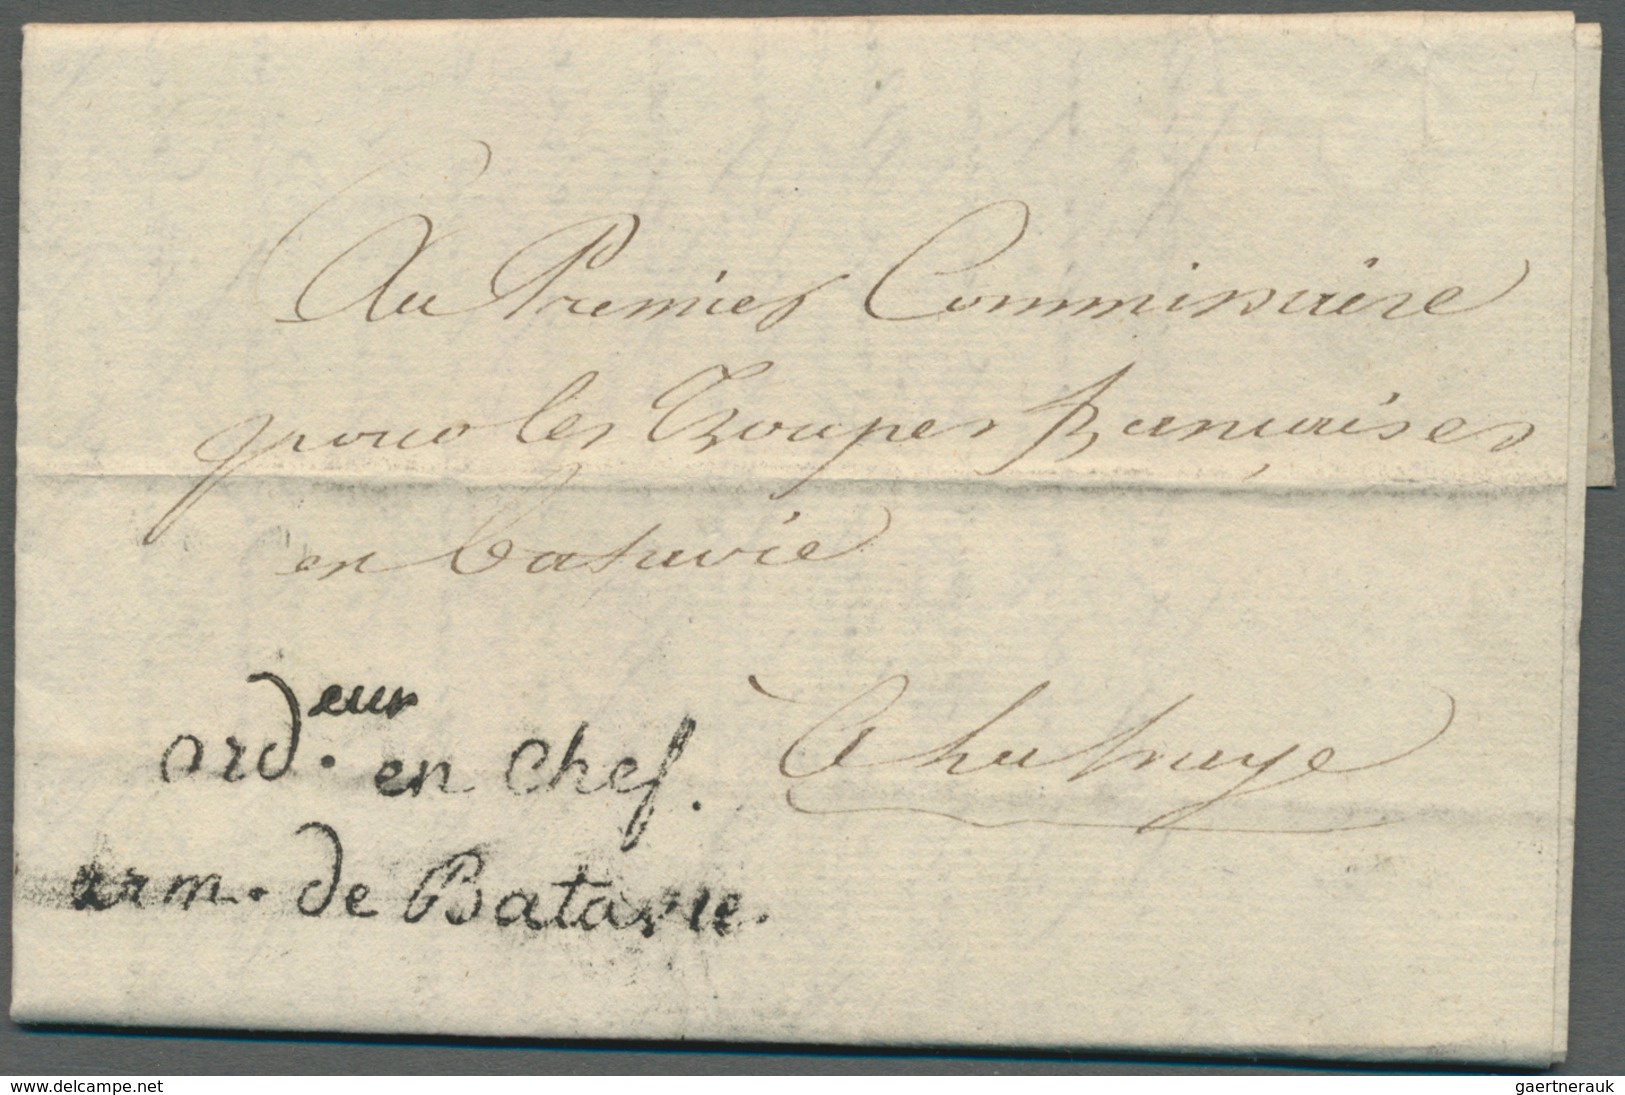 28631 Europa - West: 1893/1813, interessante Sammlung "Französische Armeepost" in Europa mit ca. 70 Briefe